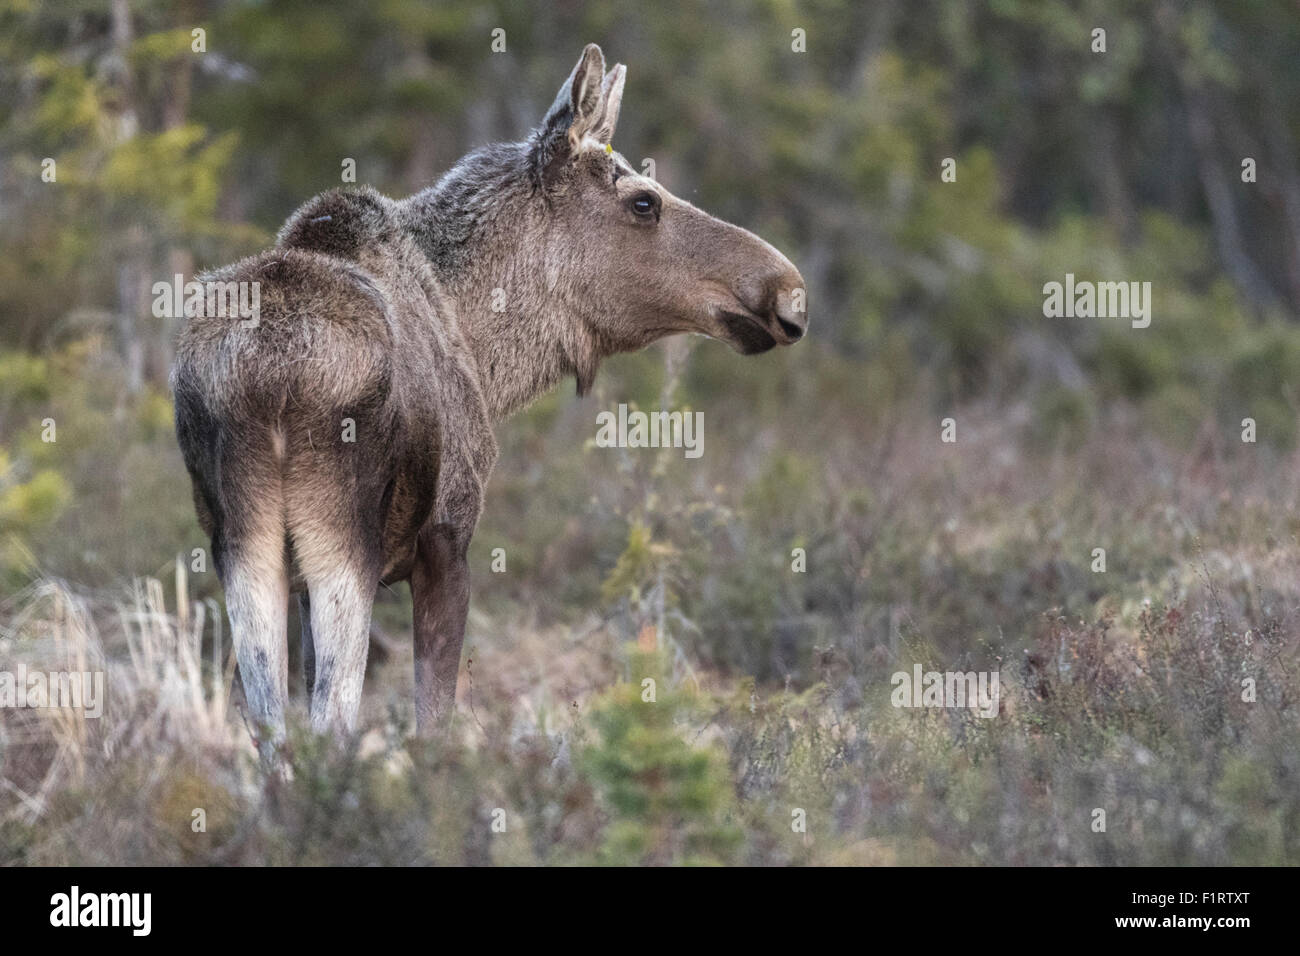 Elch, Alces Alces, stehend und wandte seinen Kopf in Richtung Kamera macht ein Profil Foto, Gällivare, Schwedisch Lappland, Schweden Stockfoto